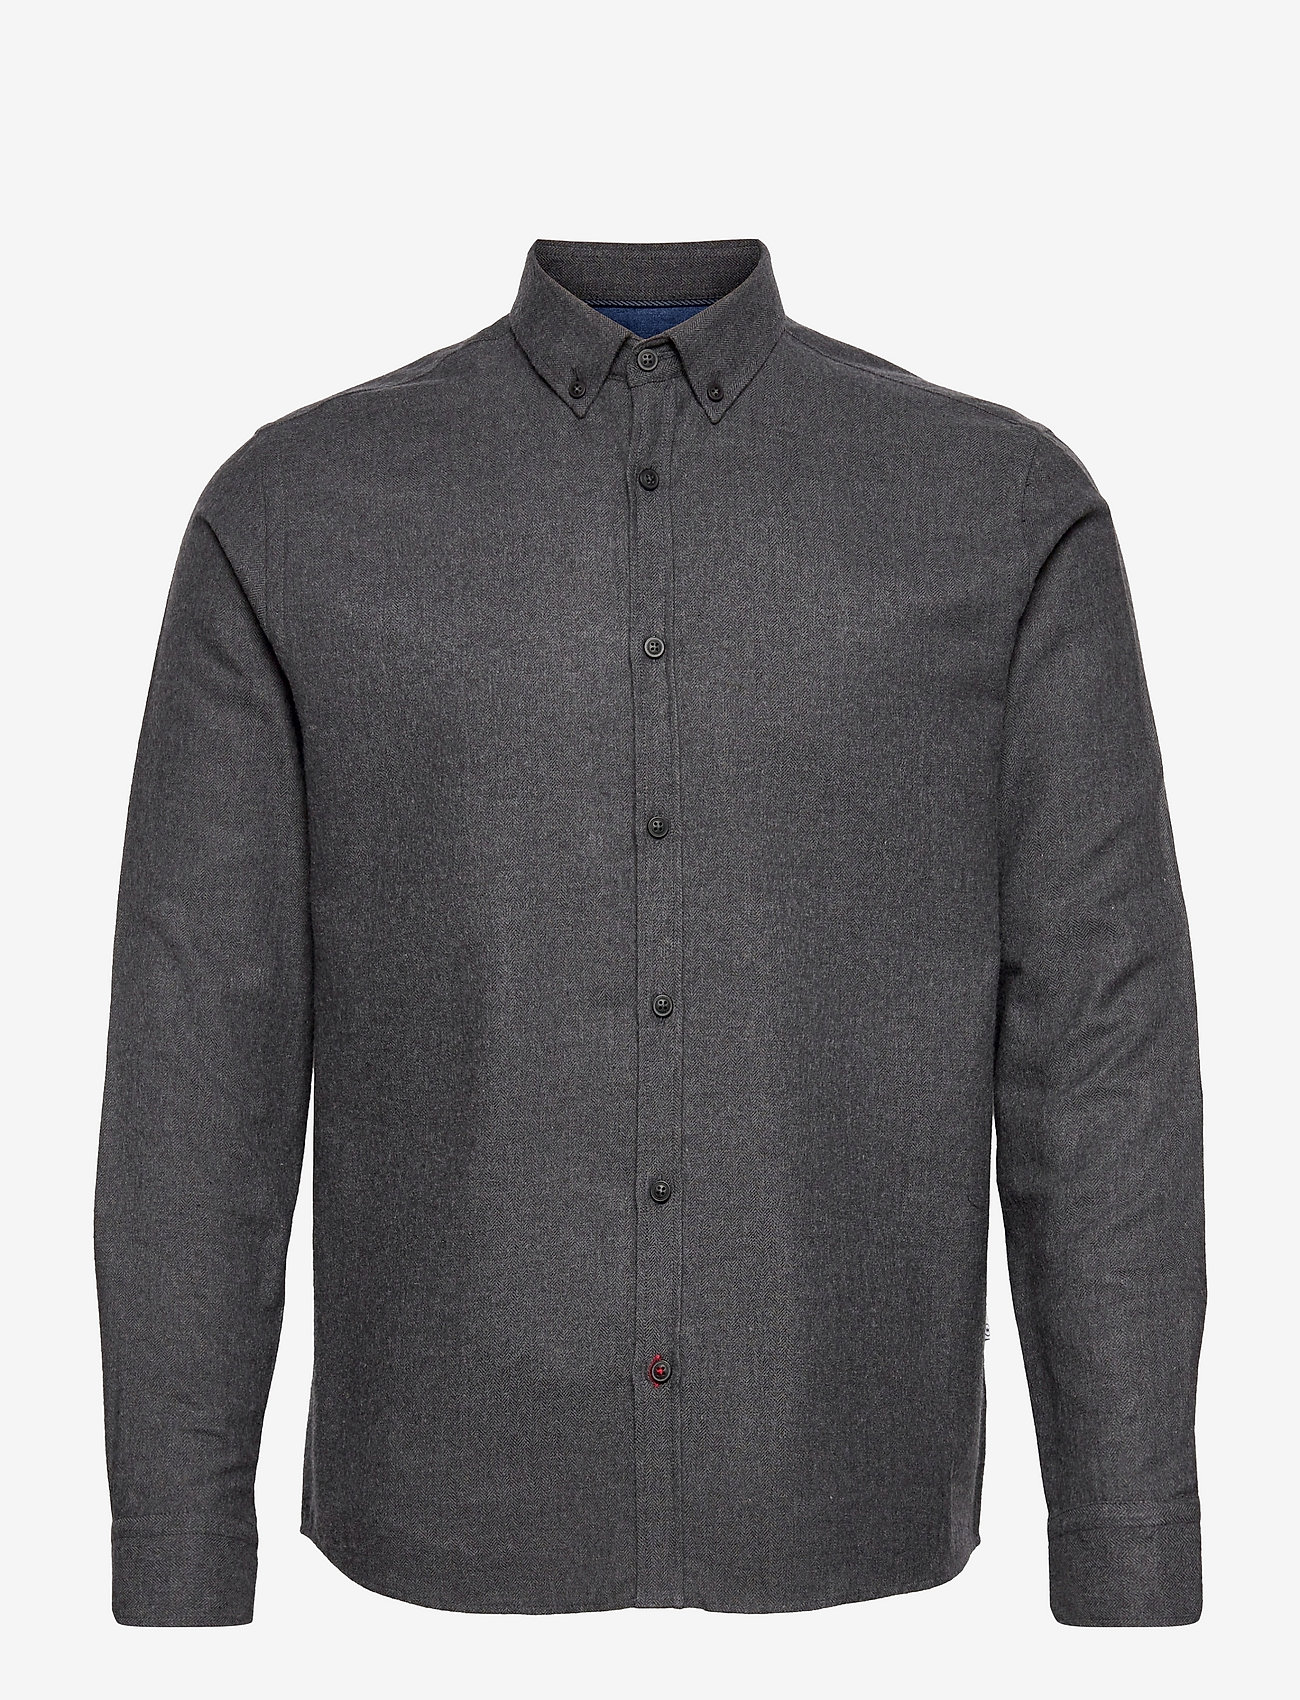 Kronstadt - Johan Herringbone flannel shirt - laisvalaikio marškiniai - black - 0